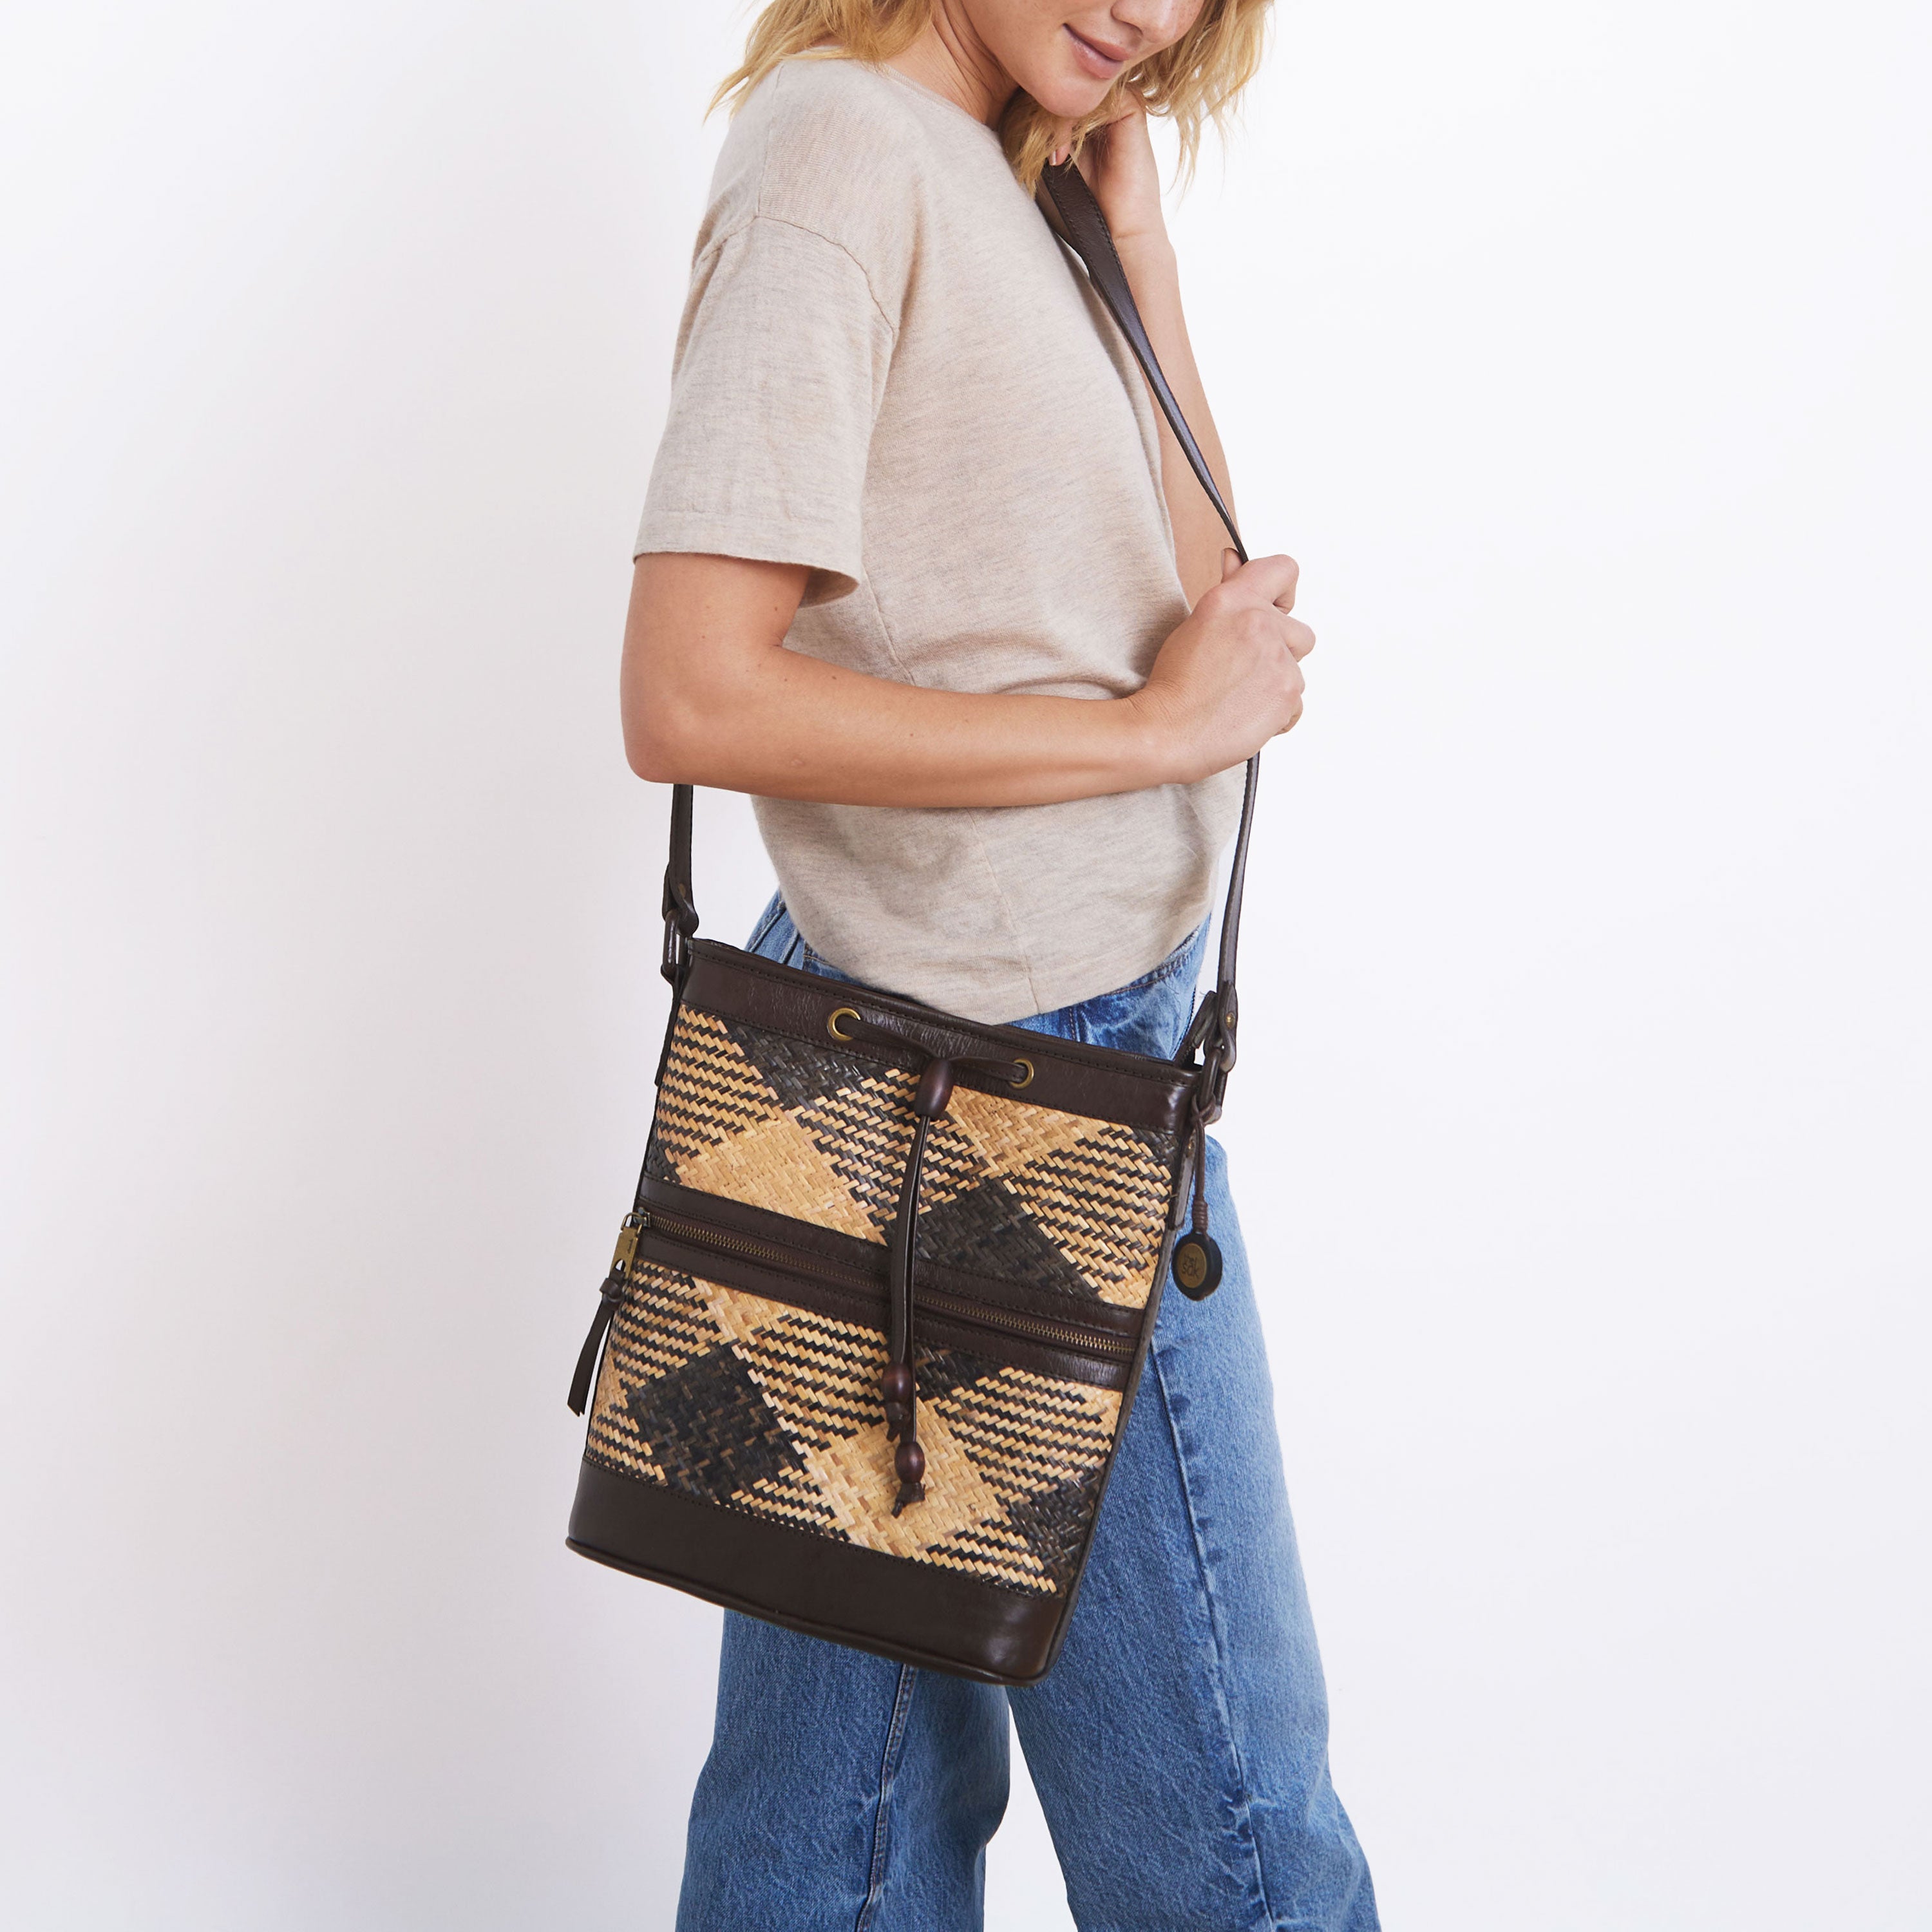 Brown Crossbody Bag - Mini Bag - Straw Bag - Crossbody Bag - Lulus